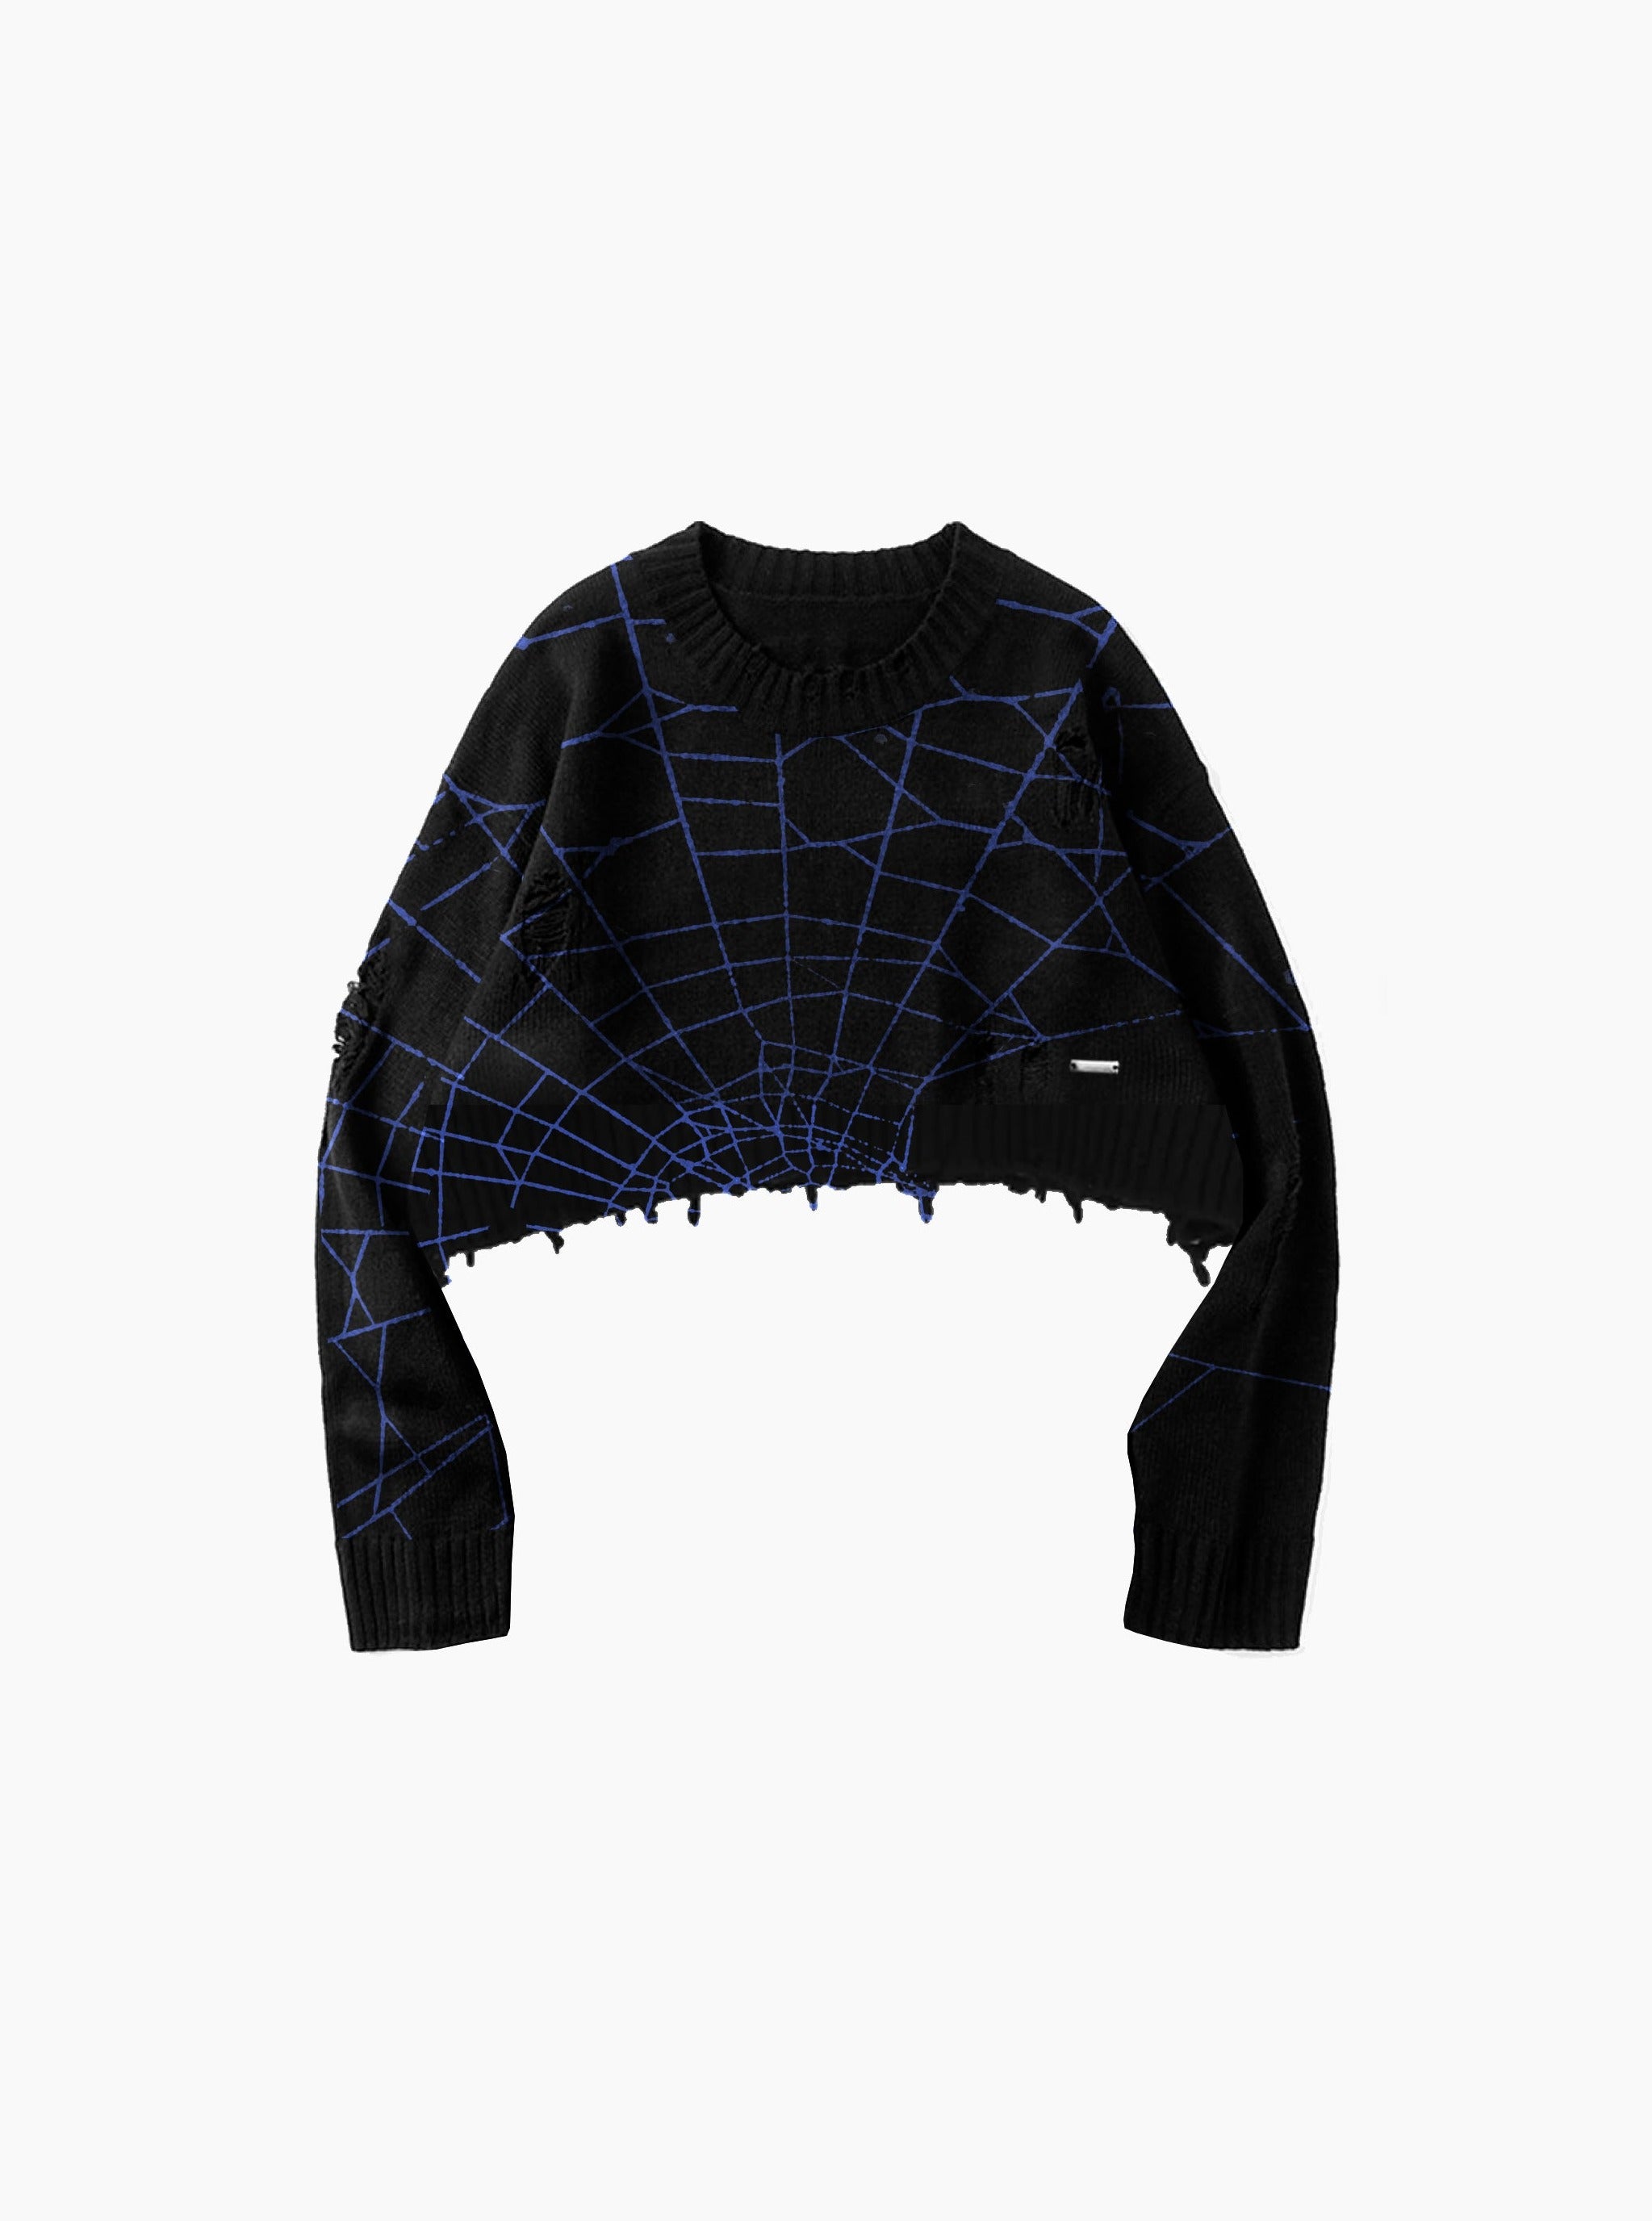 Sole et. Al Women's Dark Web Distressed Knit Sweater